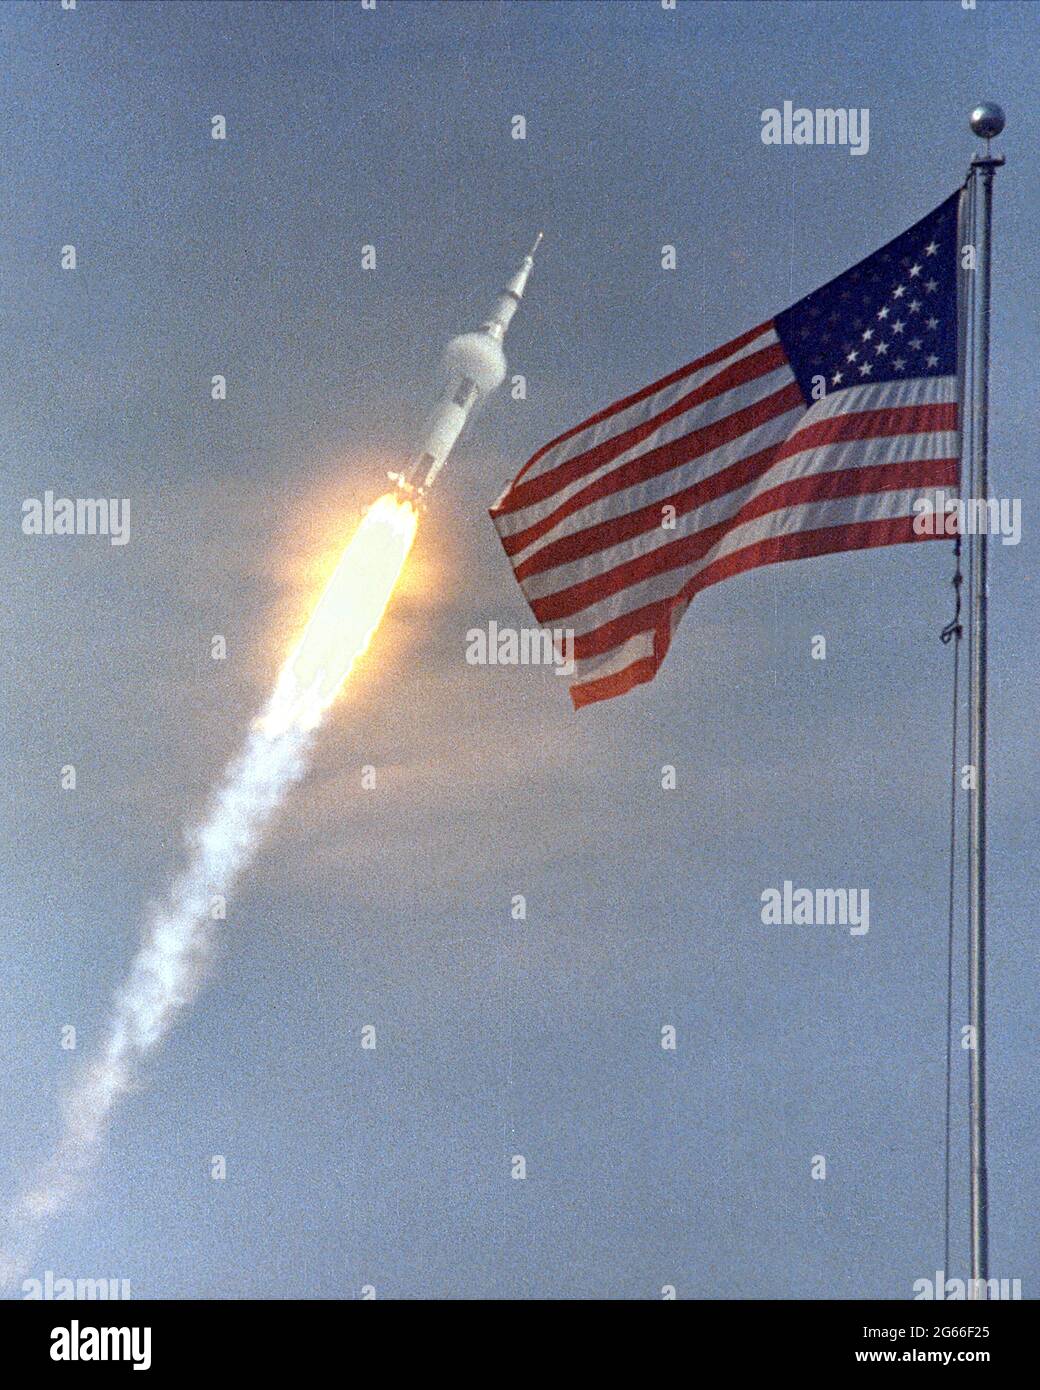 Die amerikanische Flagge läutet der Flug von Apollo 11, die erste Mondlandung Mission. Das Raumfahrzeug Apollo 11 Saturn V abgehoben mit Astronauten Michael Collins, Neil A. Armstrong und Edwin E. Aldrin, Jr., um 9:32 Uhr EDT 16. Juli 1969, vom Kennedy Space Center Launch Complex 39A. Während der geplanten acht-Tage-Mission wird Armstrong und Aldrin absteigen in einer Mondlandefähre auf der Oberfläche des Mondes während Collins Mehraufwand bei der Monitorbox umkreist. Die beiden Astronauten sollen auf dem Mond, einschließlich zwei und eine halbe Stunden außerhalb der Mondfähre 22 Stunden verbringen. Stockfoto